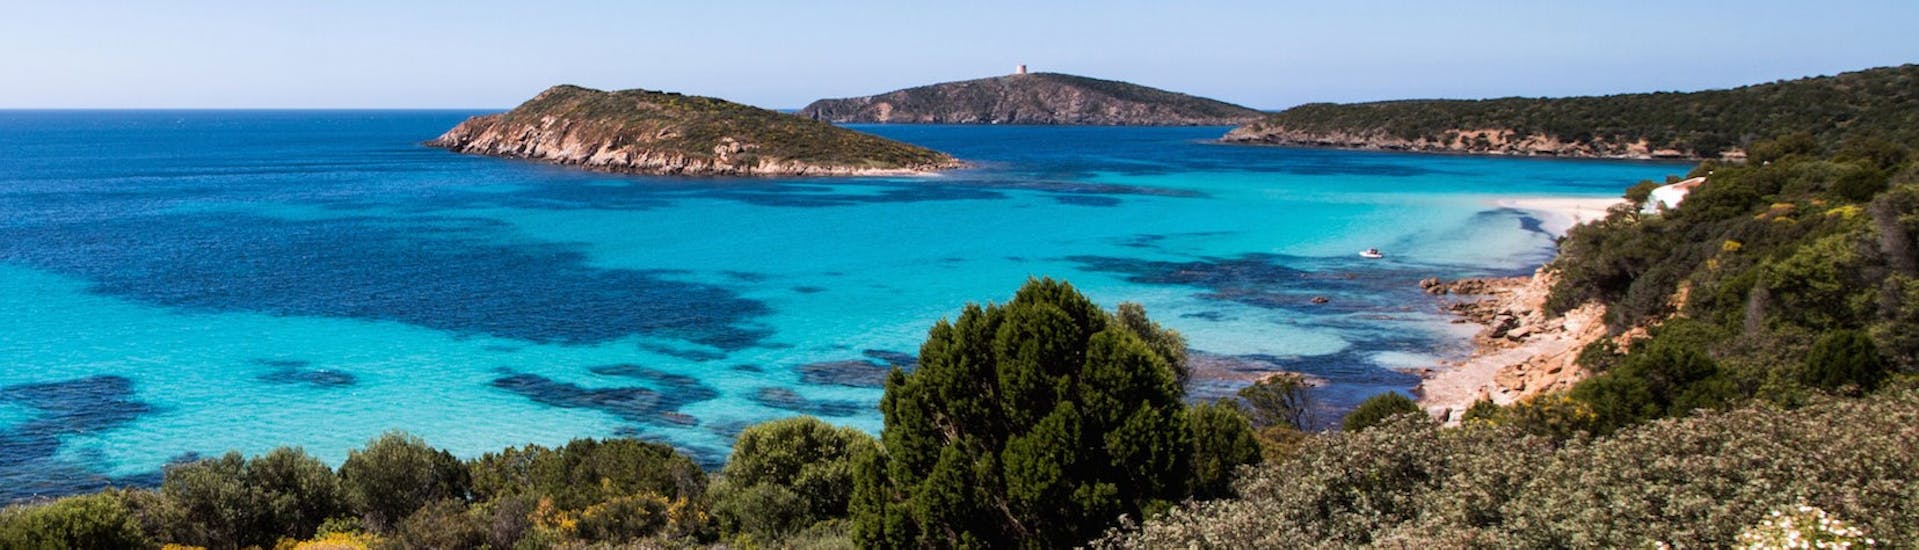 Le acque color smeraldo della Sardegna che potete ammirare con Sardinia Dream Tour Cagliari durante il Giro in gommone privato da Cagliari con soste per nuotare e fare snorkeling.